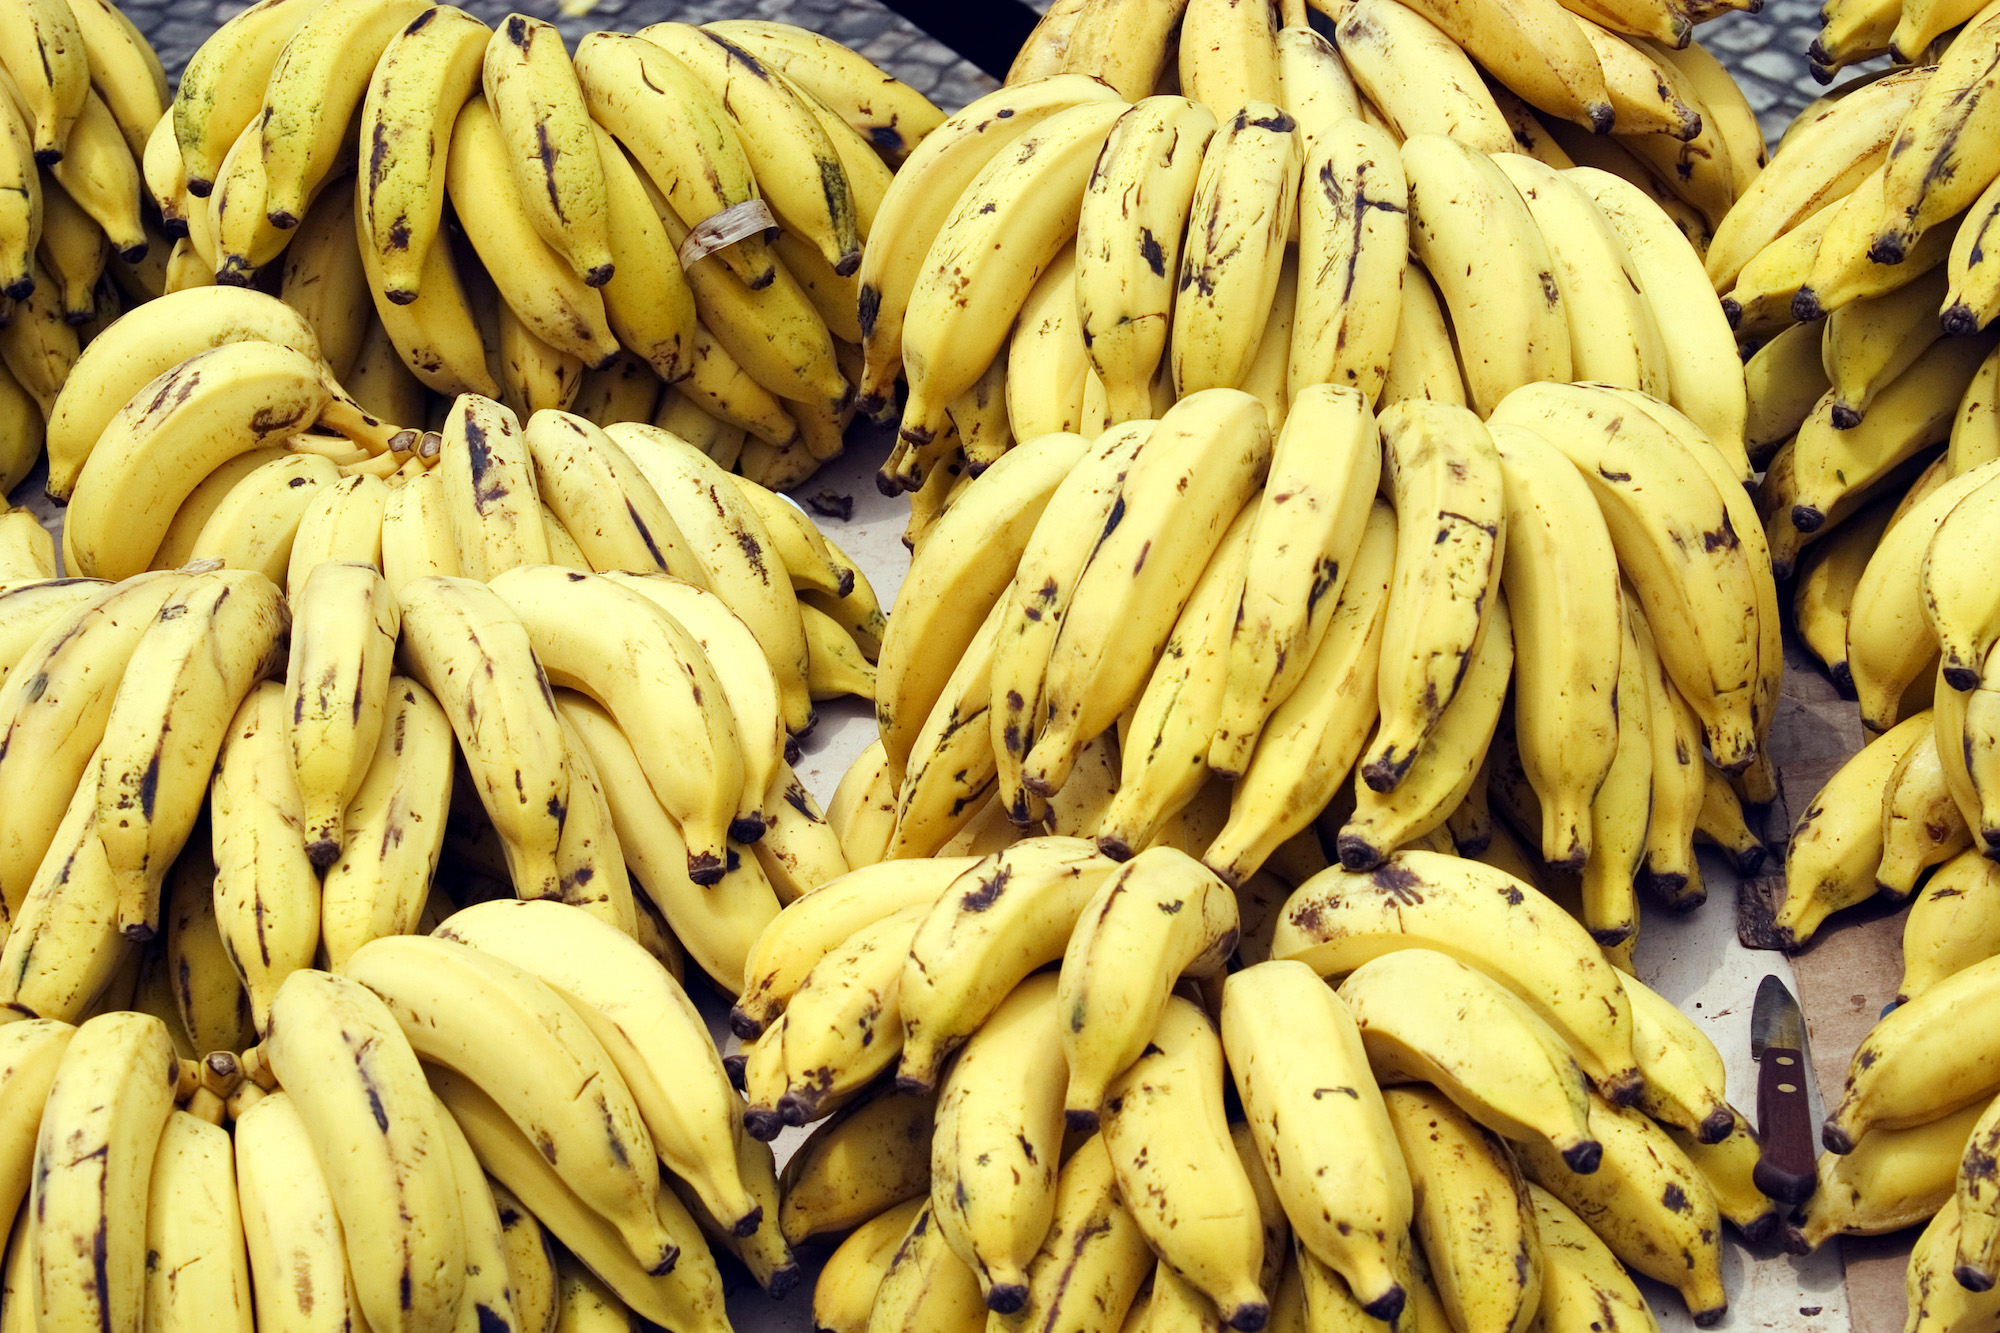 Banana bunch